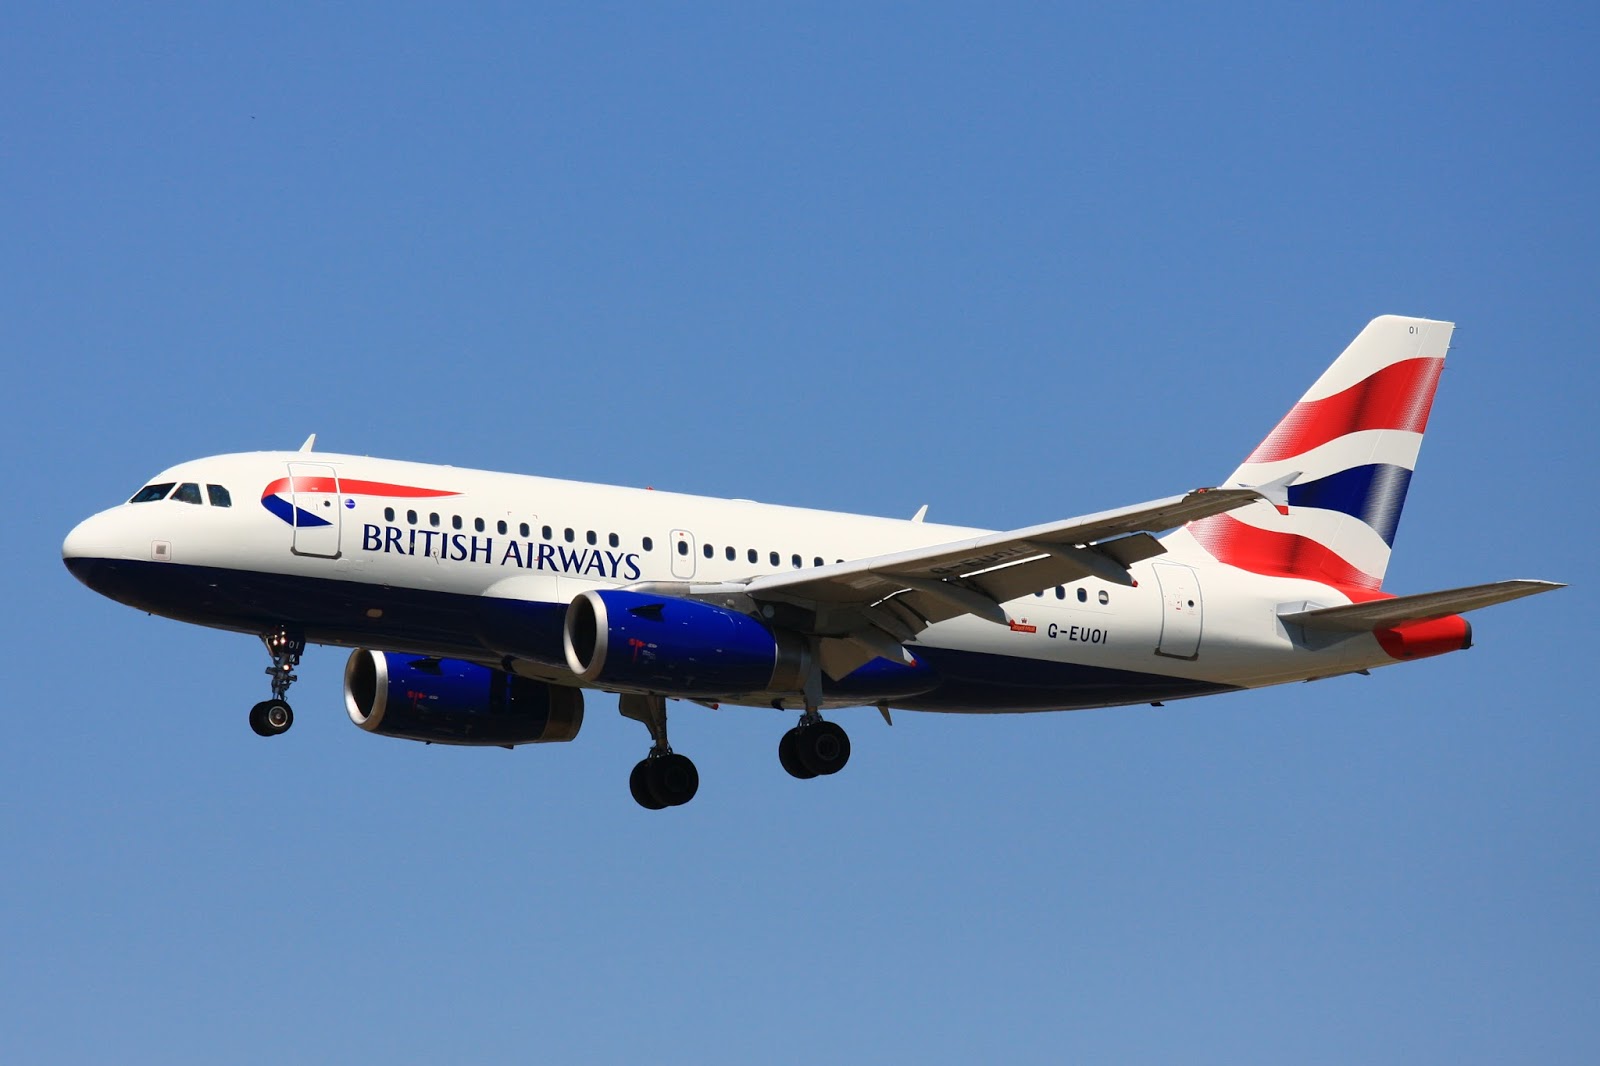 林公子生活遊記: 英國航空助本地企業飛得更高英國航空推出全新On Business企業飛行獎勵計劃